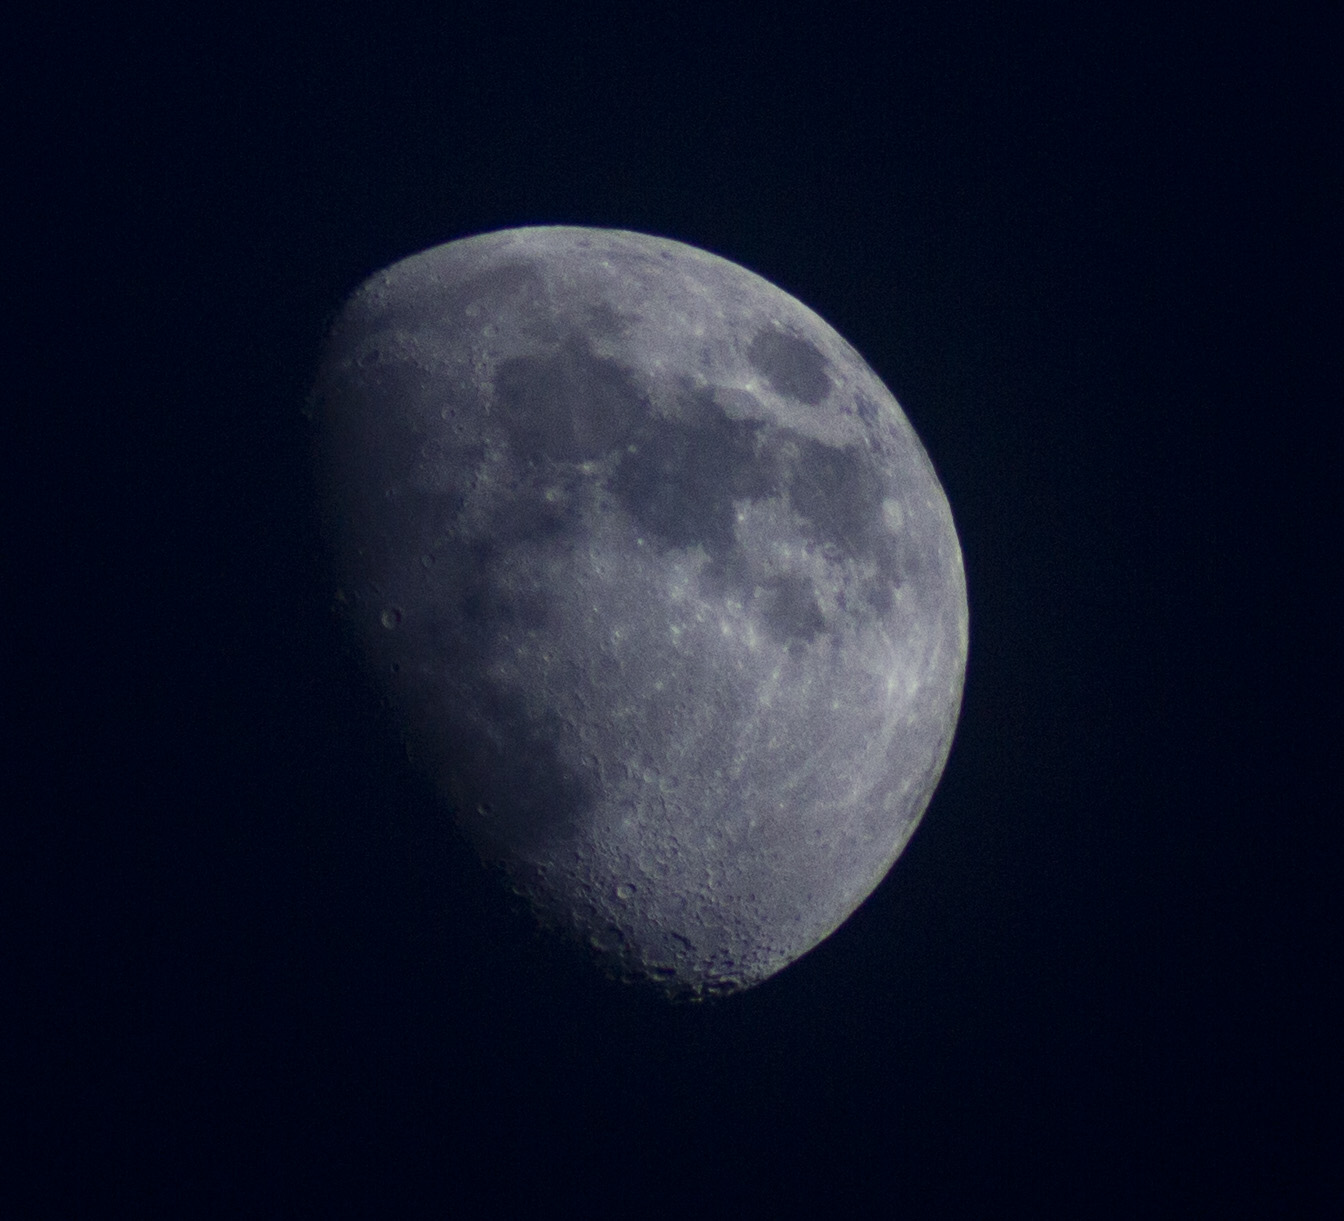 June 14th Moon, taken by Ryan Marciniak